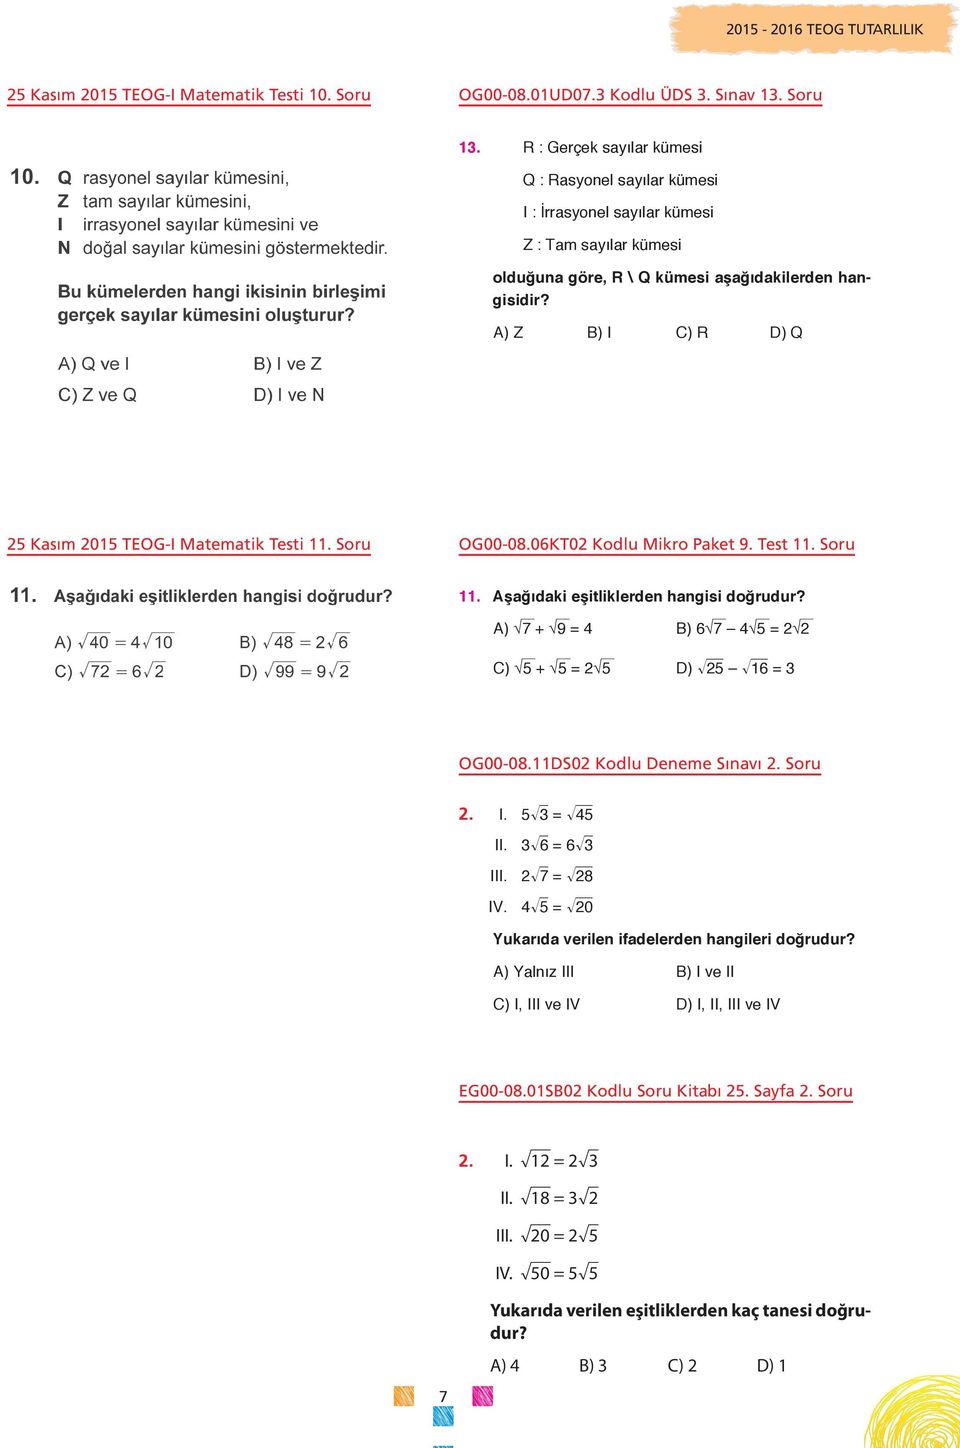 A) Z B) I C) R D) Q 25 Kasım 2015 TEOG-I Matematik Testi 11. Soru OG00-08.06KT02 Kodlu Mikro Paket 9. Test 11. Soru 11. Aşağıdaki eşitliklerden hangisi doğrudur?